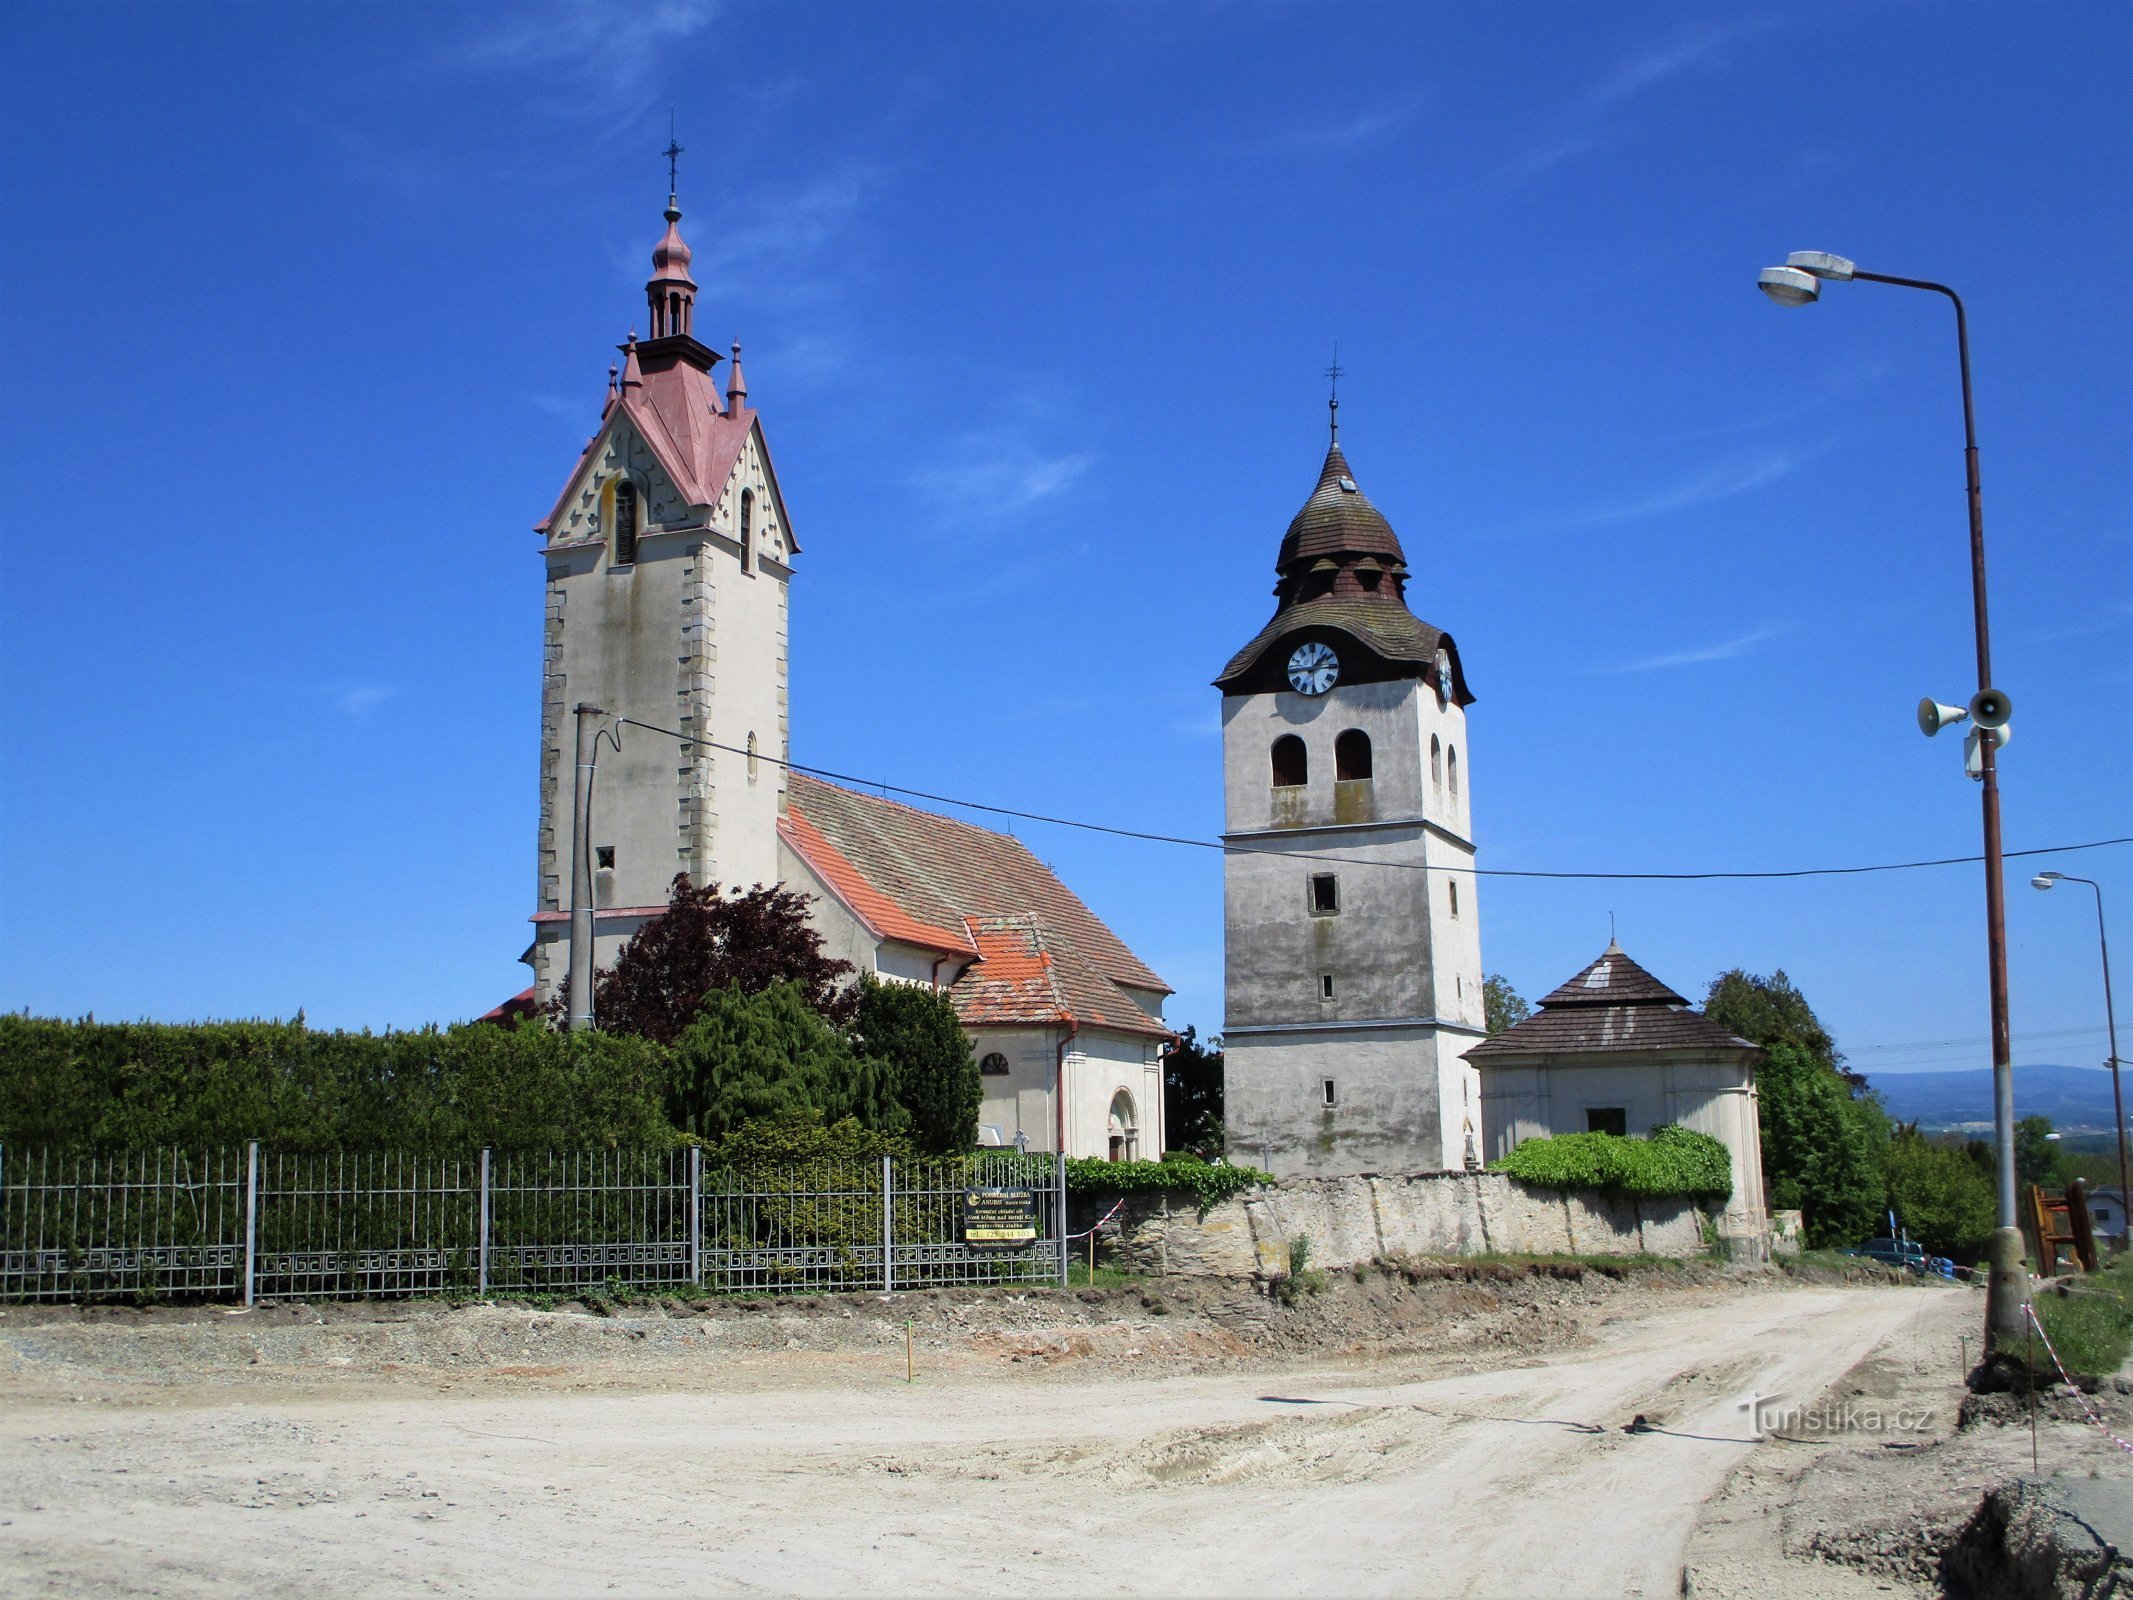 Iglesia de San Nicolás con el campanario (Bohuslavice nad Metují, 18.5.2020/XNUMX/XNUMX)